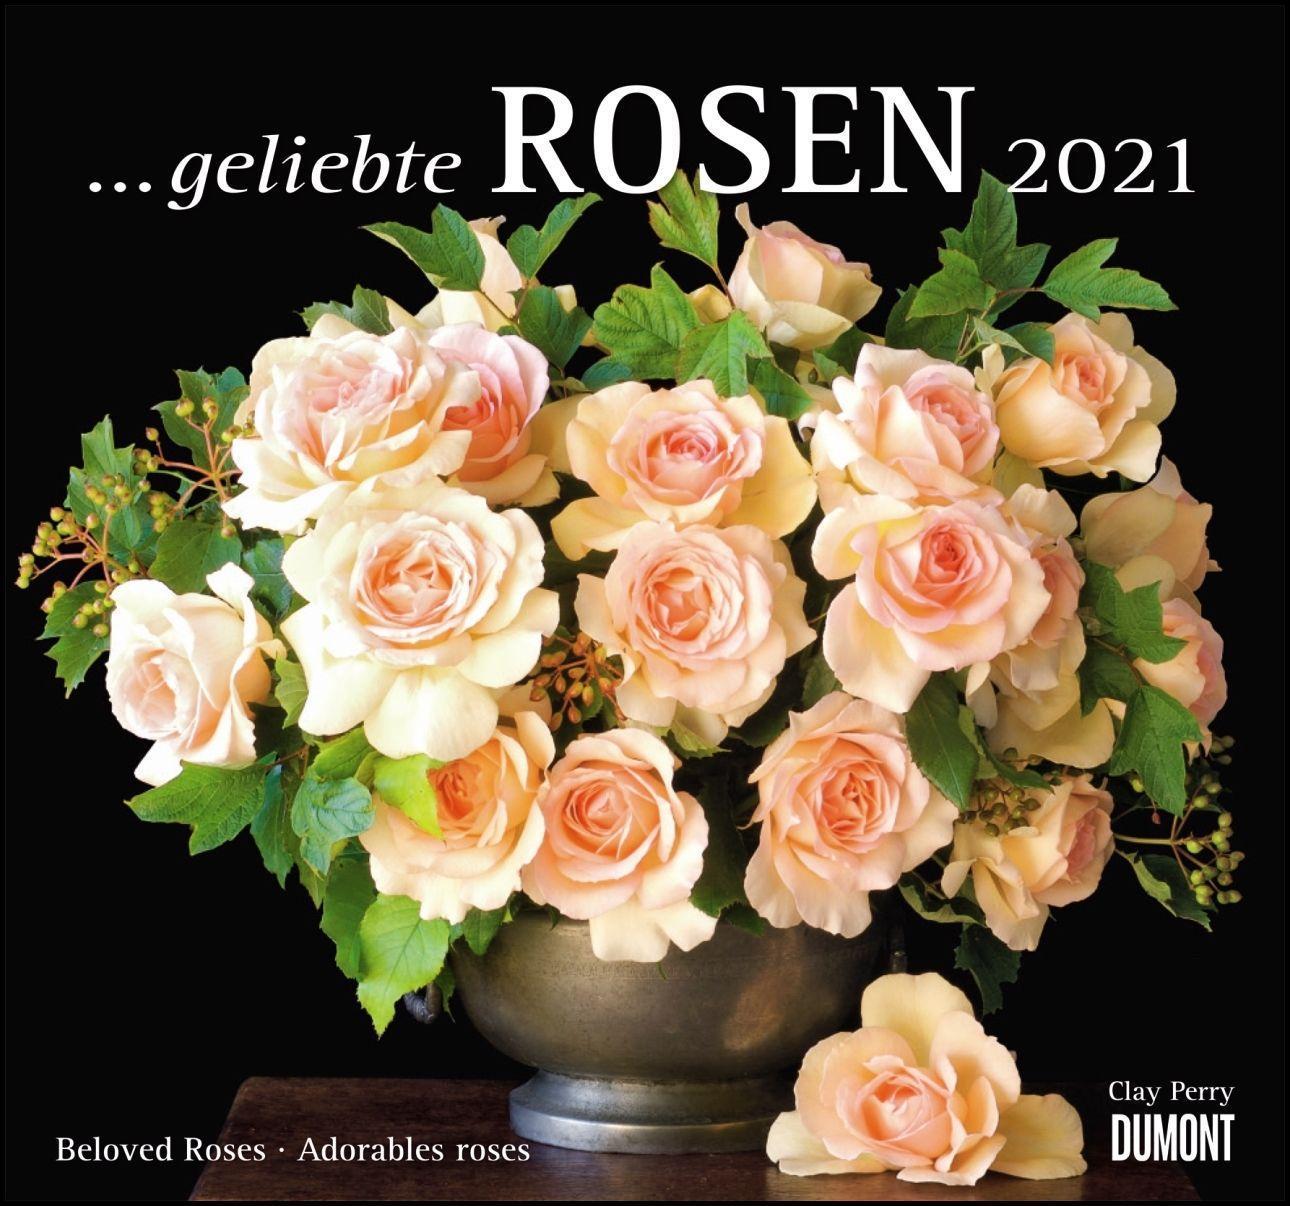 geliebte　Kalender　bei　Rosen　2021　bestellen